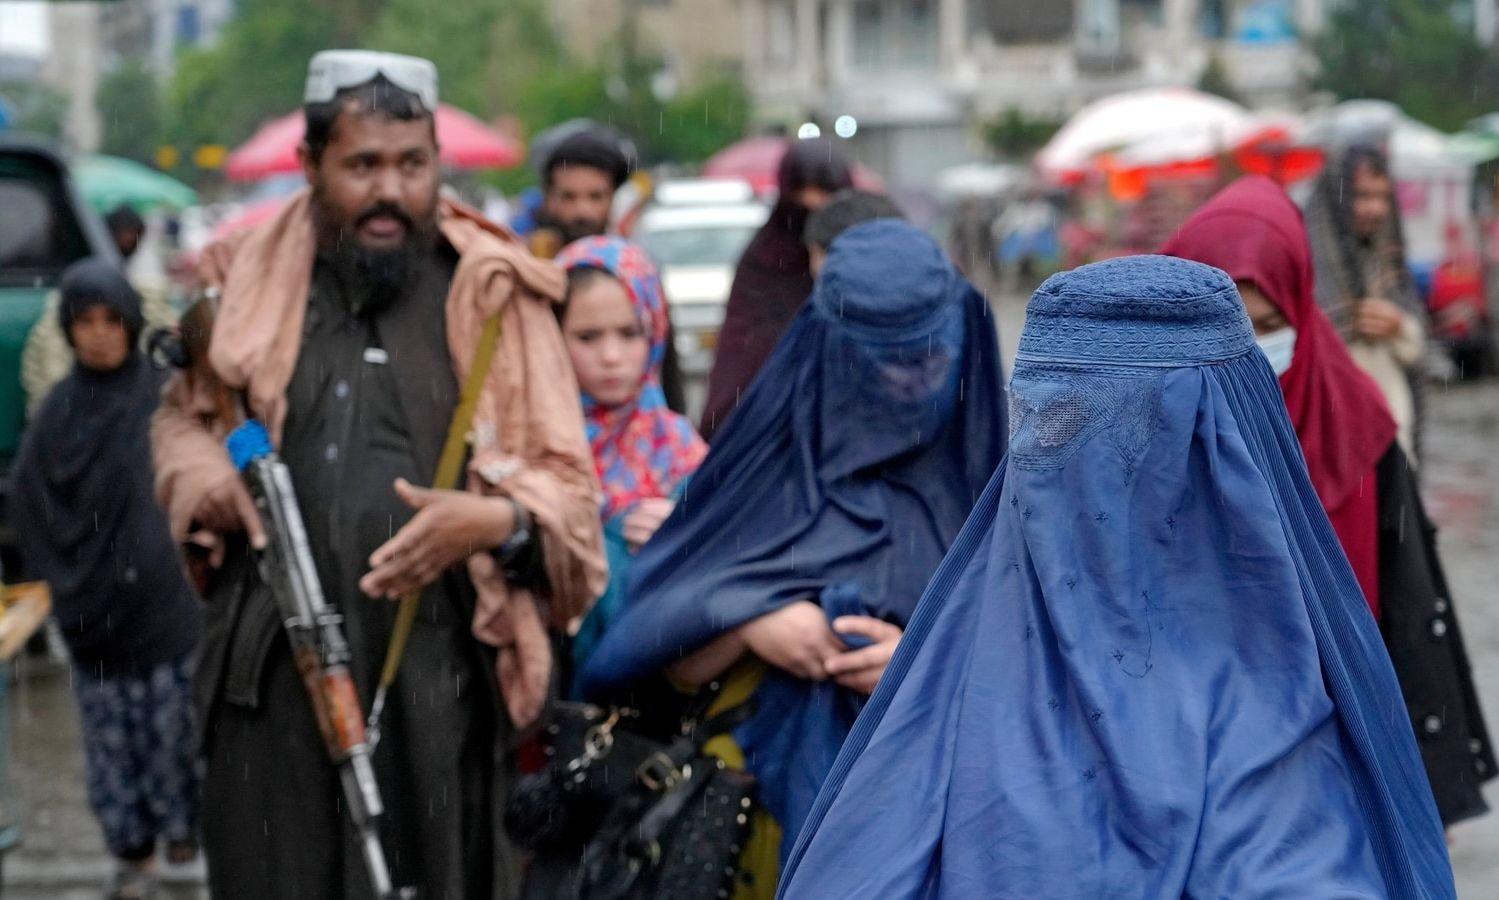 رهبر طالبان: زنان افغانستان مدیون ما هستند!